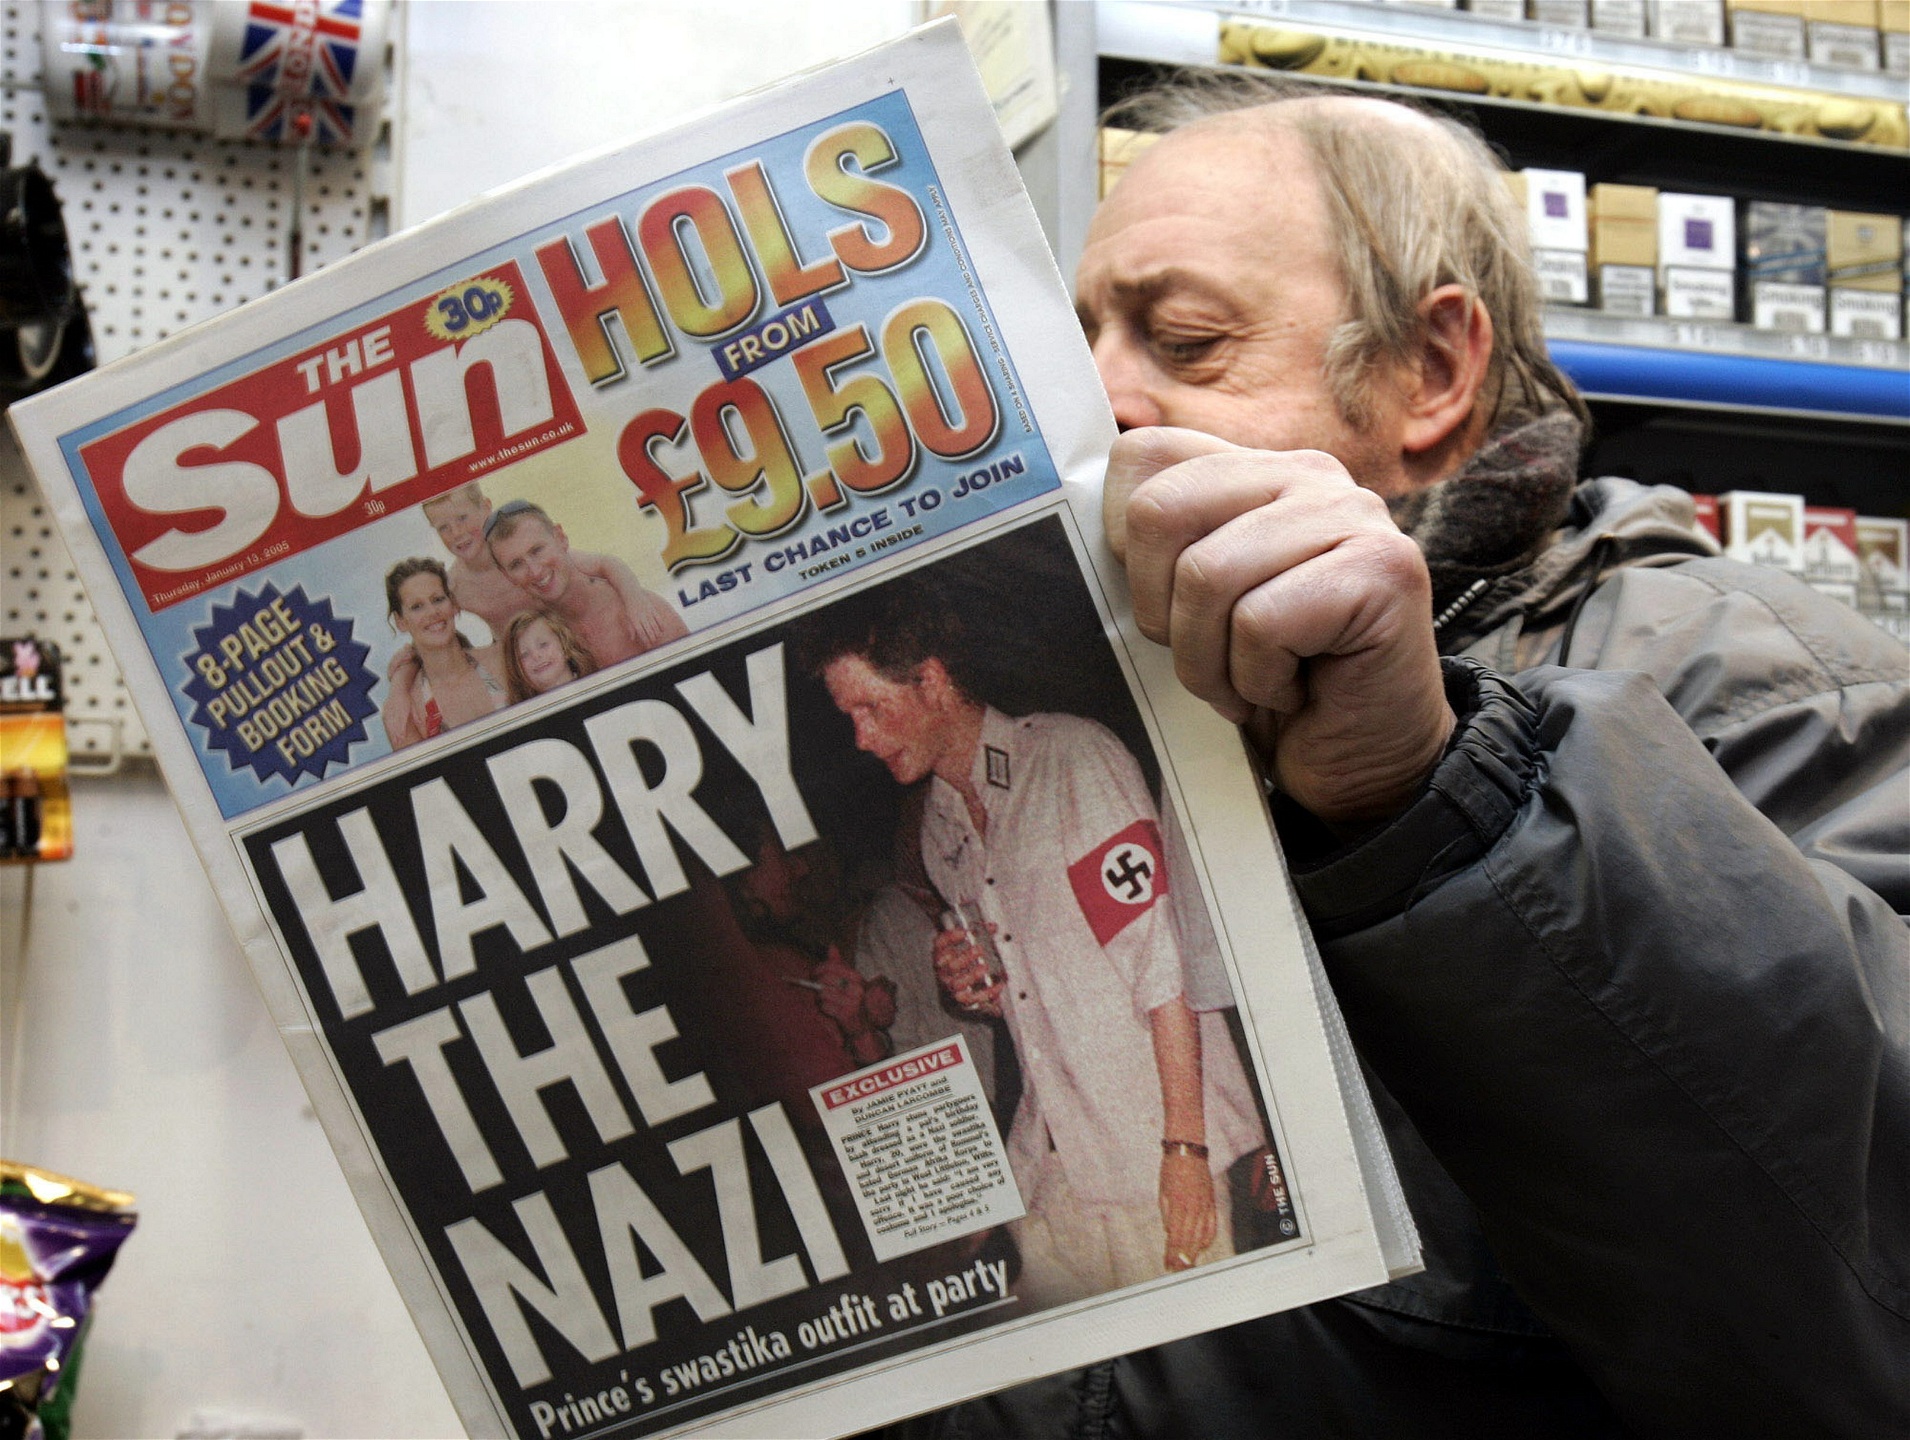 När den 20-årige prins Harry gick på maskerad i nazistutstyrsel 2005 blev det stora rubriker i brittisk och internationell press. Harry gjorde avbön dagen efter, men skandalen är inte glömd.